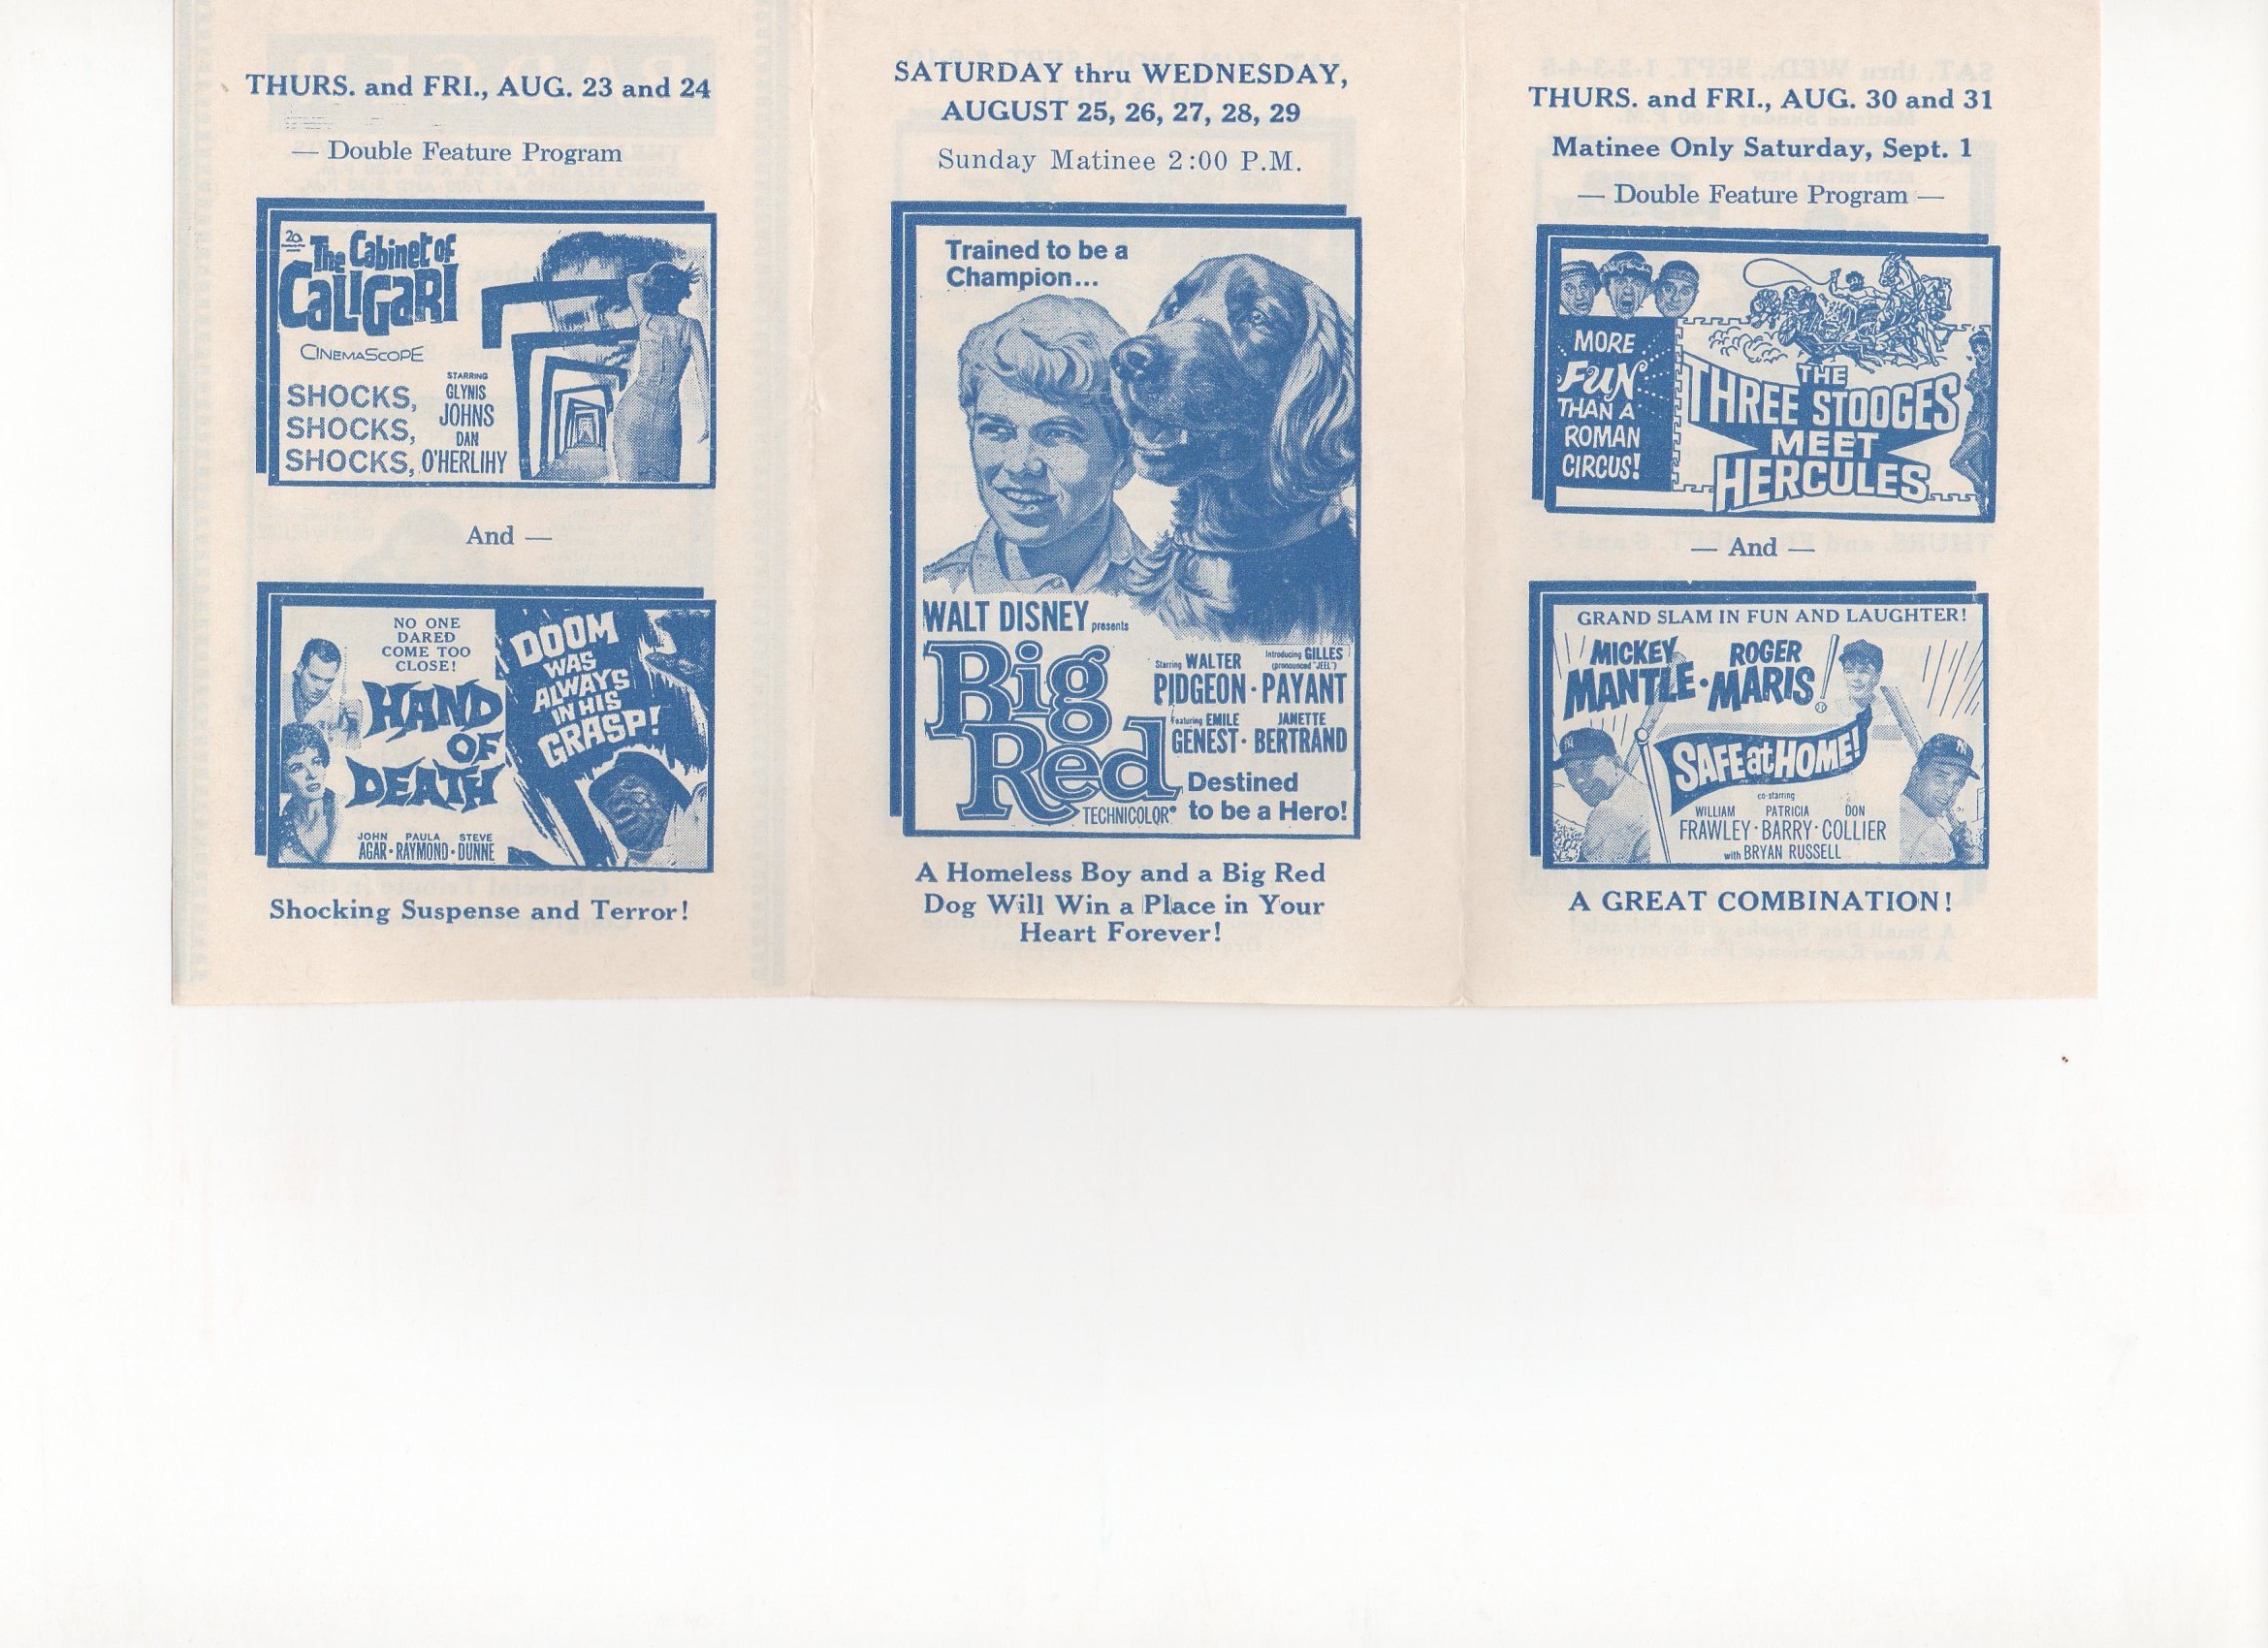 1962 movie flyer, badger, wisconsin 08/30,31